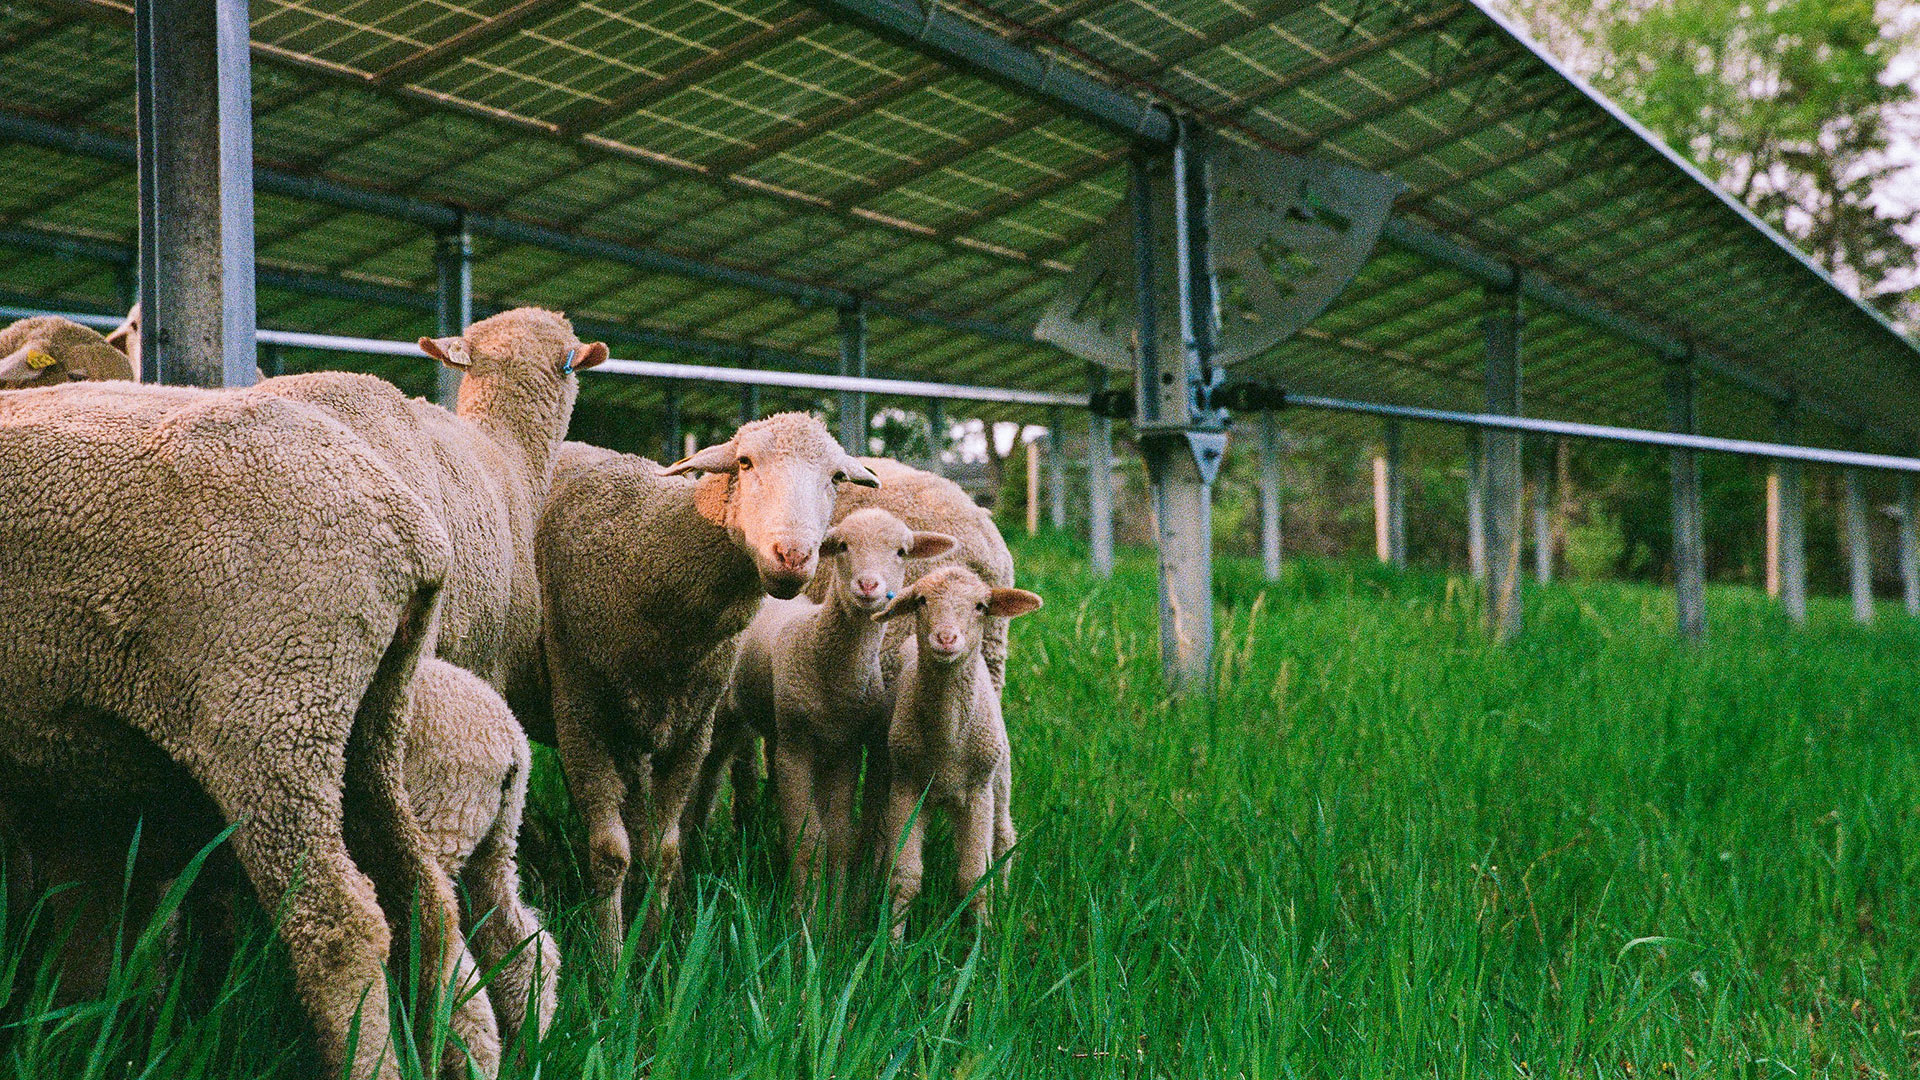 Sheep standing near an Array solar tracker.